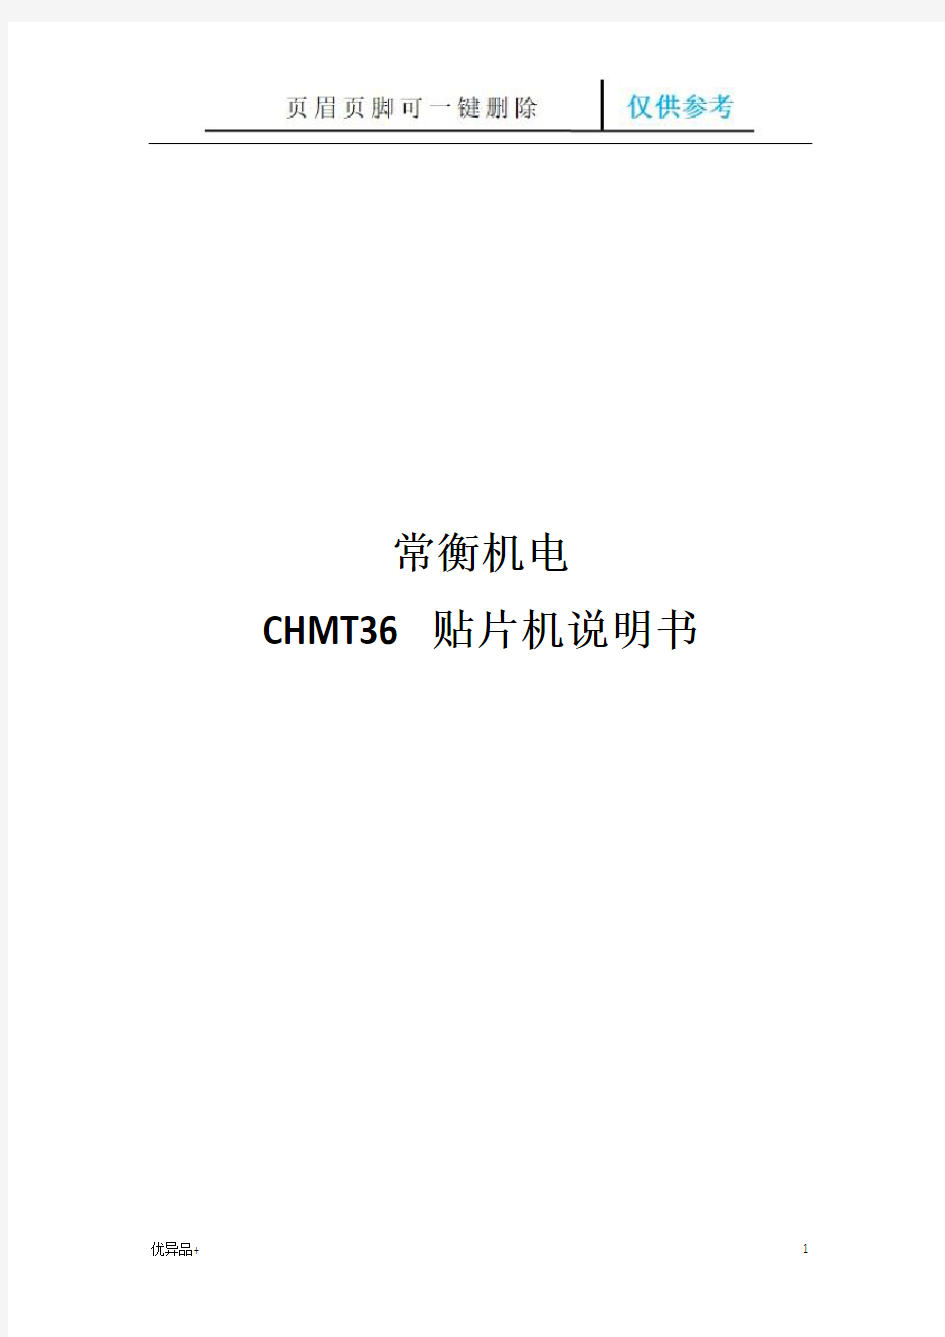 CHMT36贴片机说明书(精校版本)